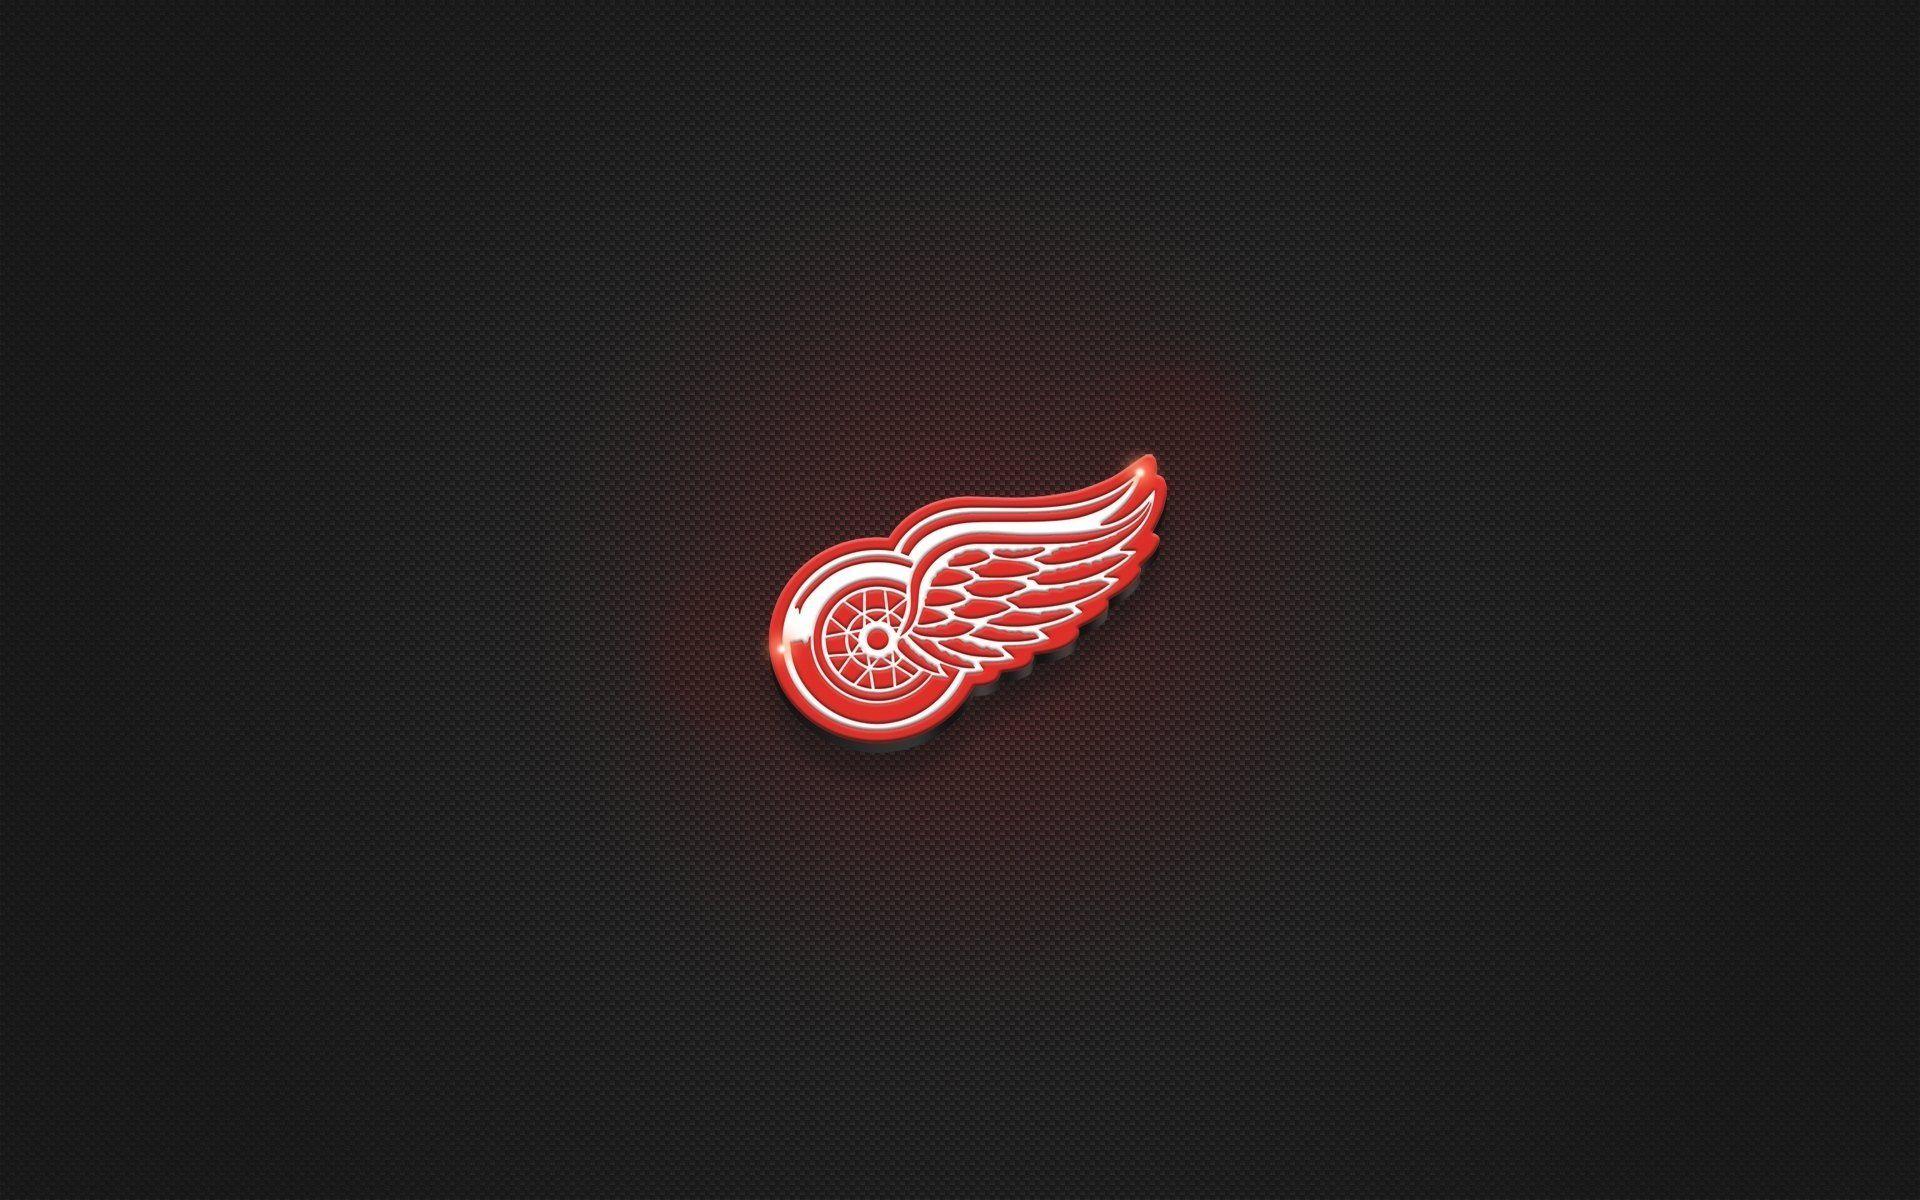 Red Wings Hockey Logo - red wings logo wheel wings hockey textures minimalism red HD wallpaper